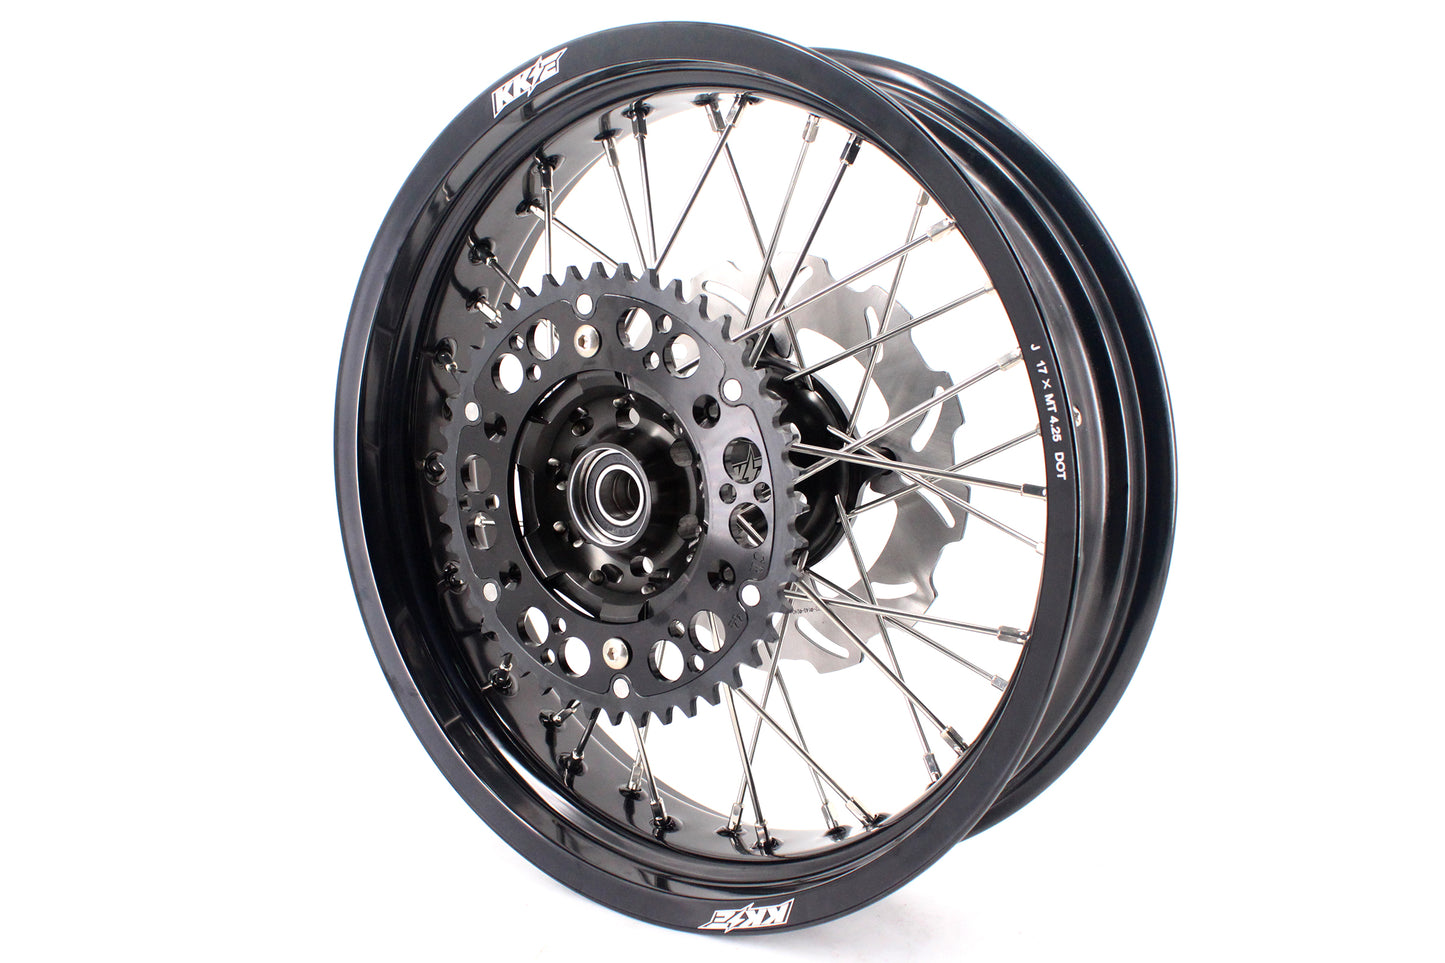 KKE 3.5 & 4.25*17in. Supermoto Wheels Rims for Honda XR650R 2000-2008 Disc Black